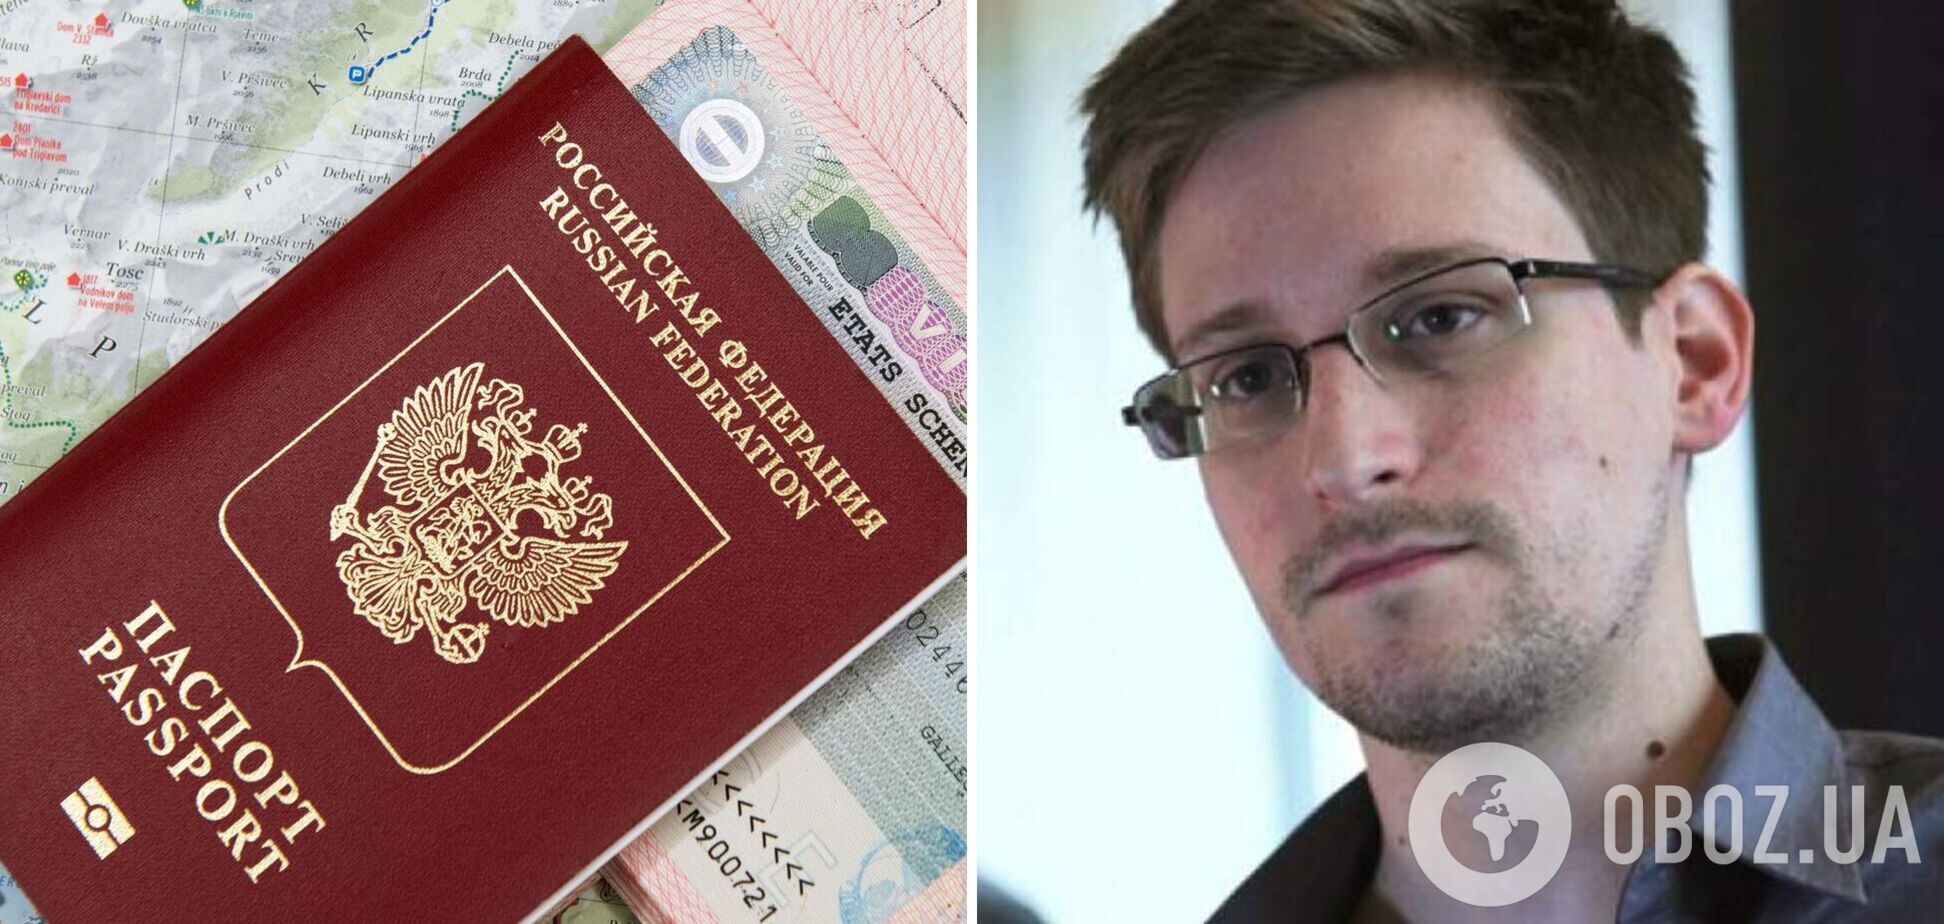 Экс-сотрудник ЦРУ Сноуден получил российский паспорт: ему в США грозит тюремный срок